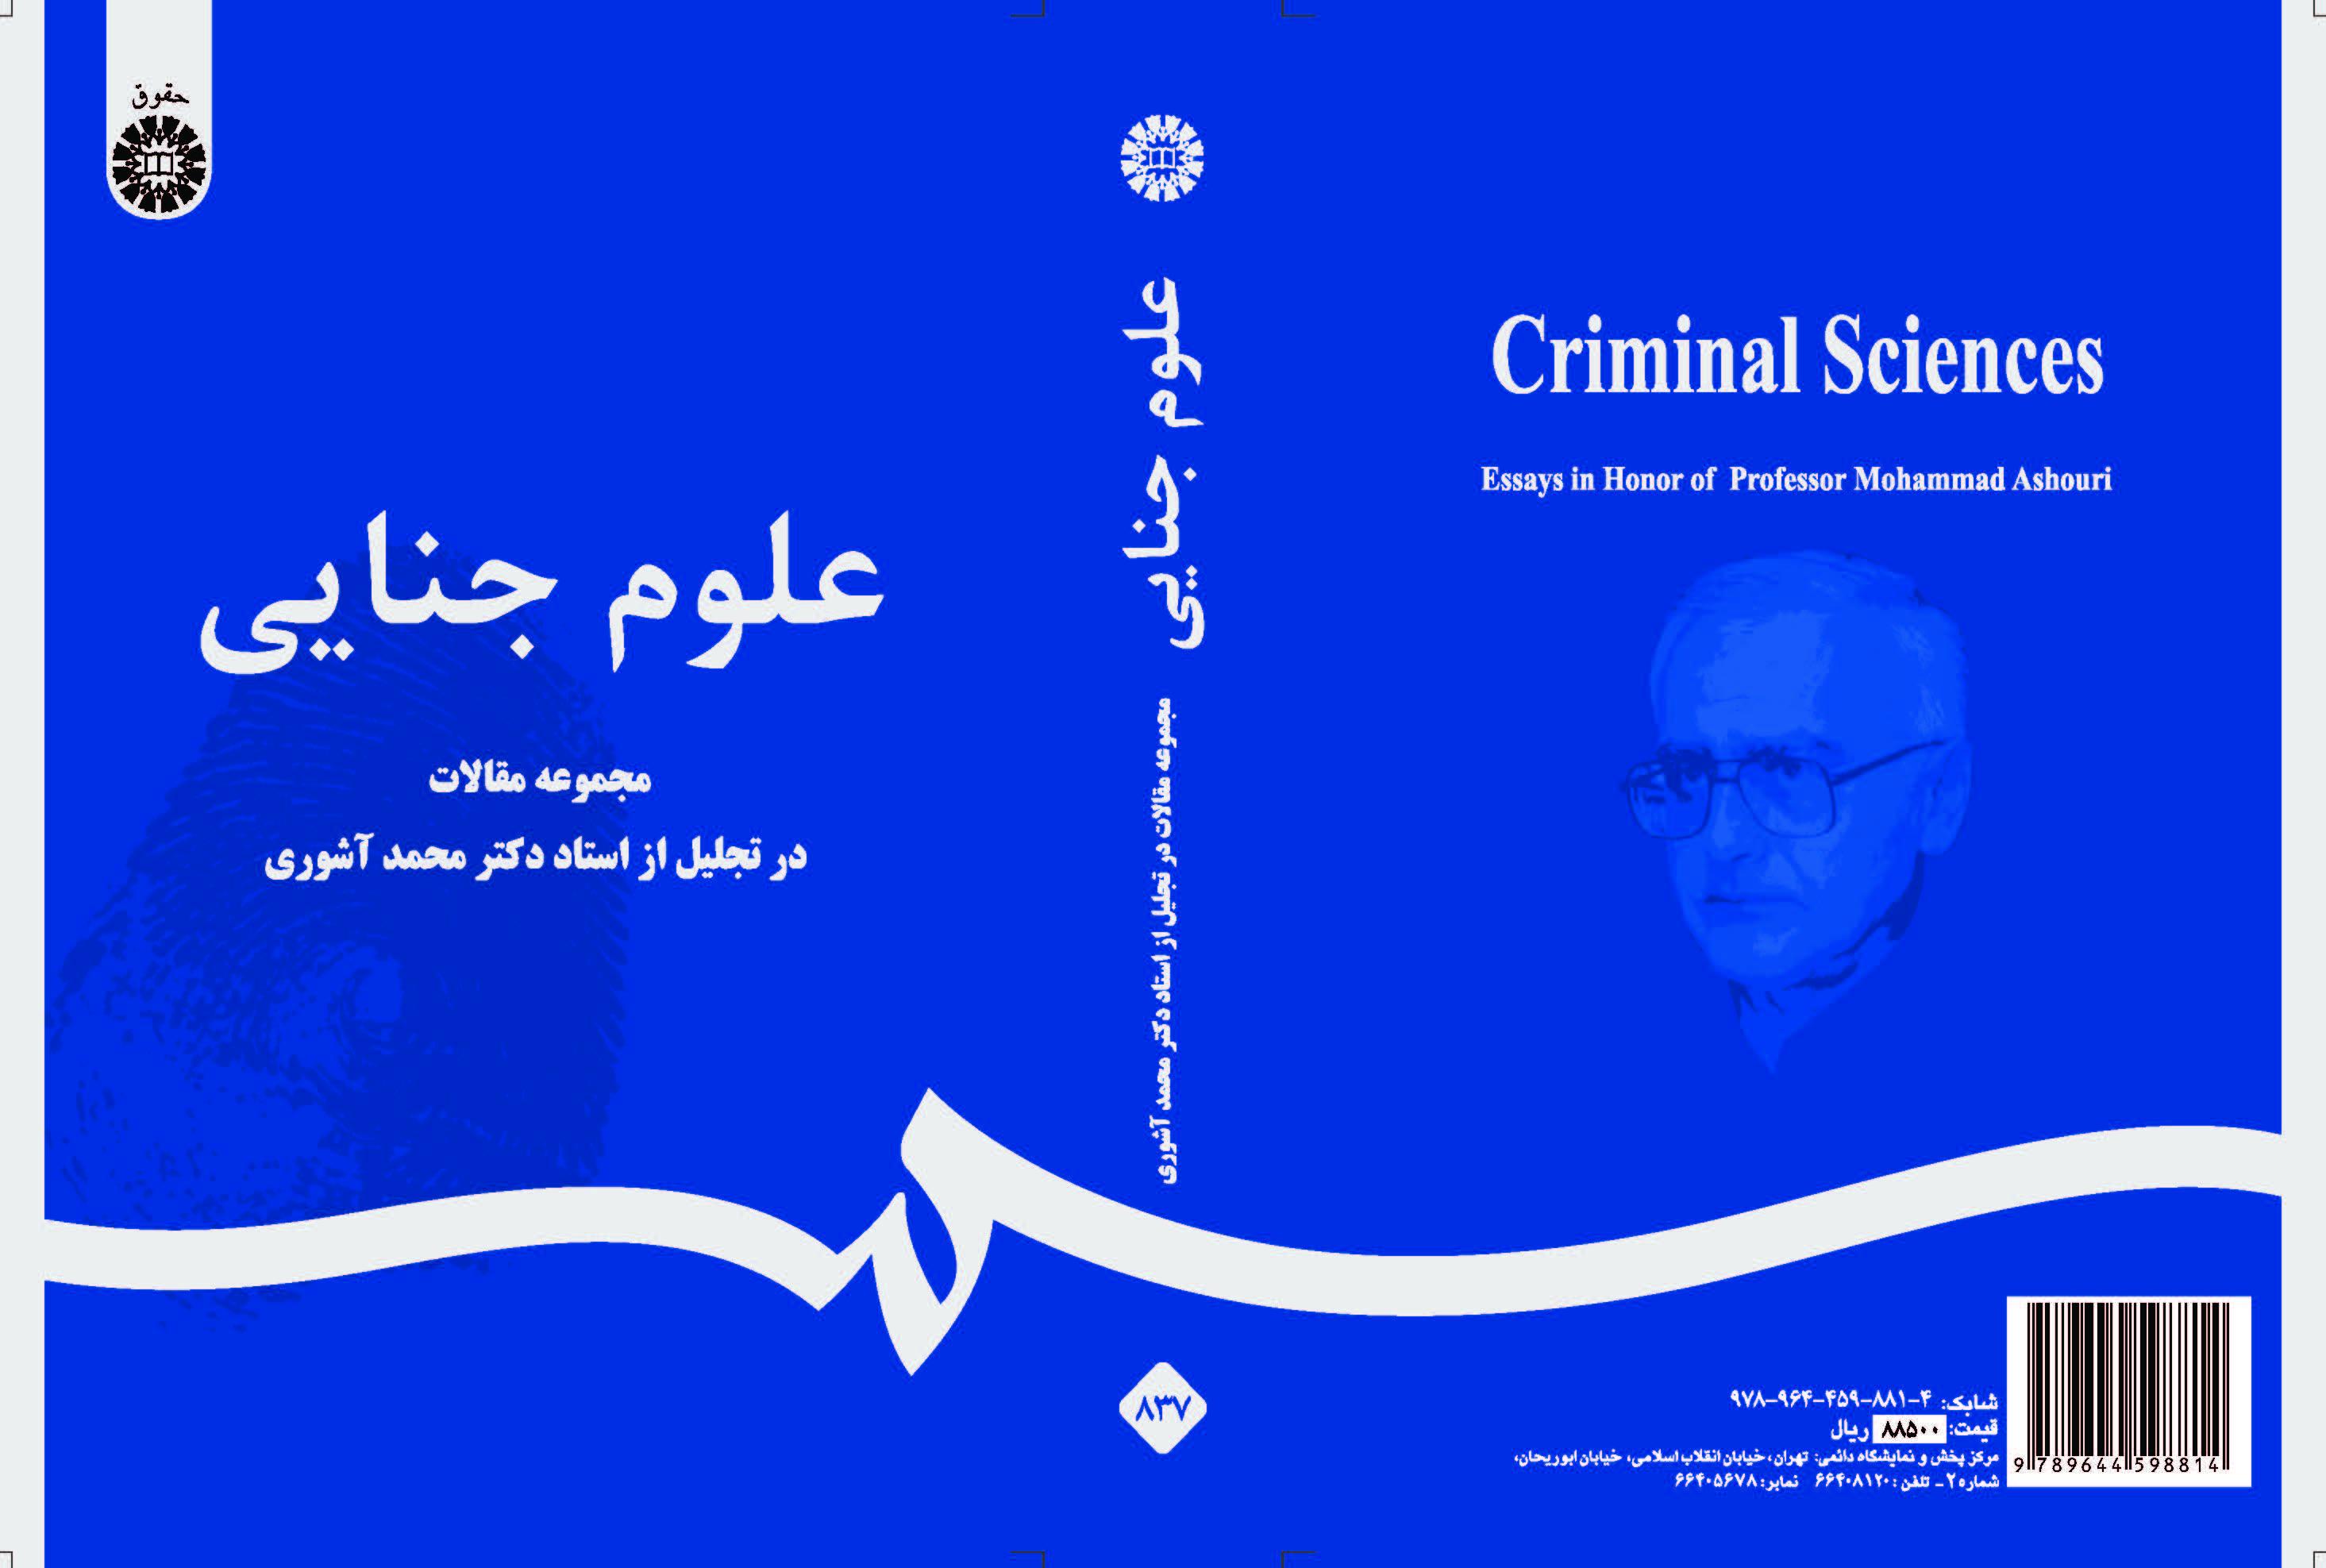 العلوم الجنائية (مجموعة مقالات في الاحتفال التكريمي للأستاذ الدكتور محمد آشوري)